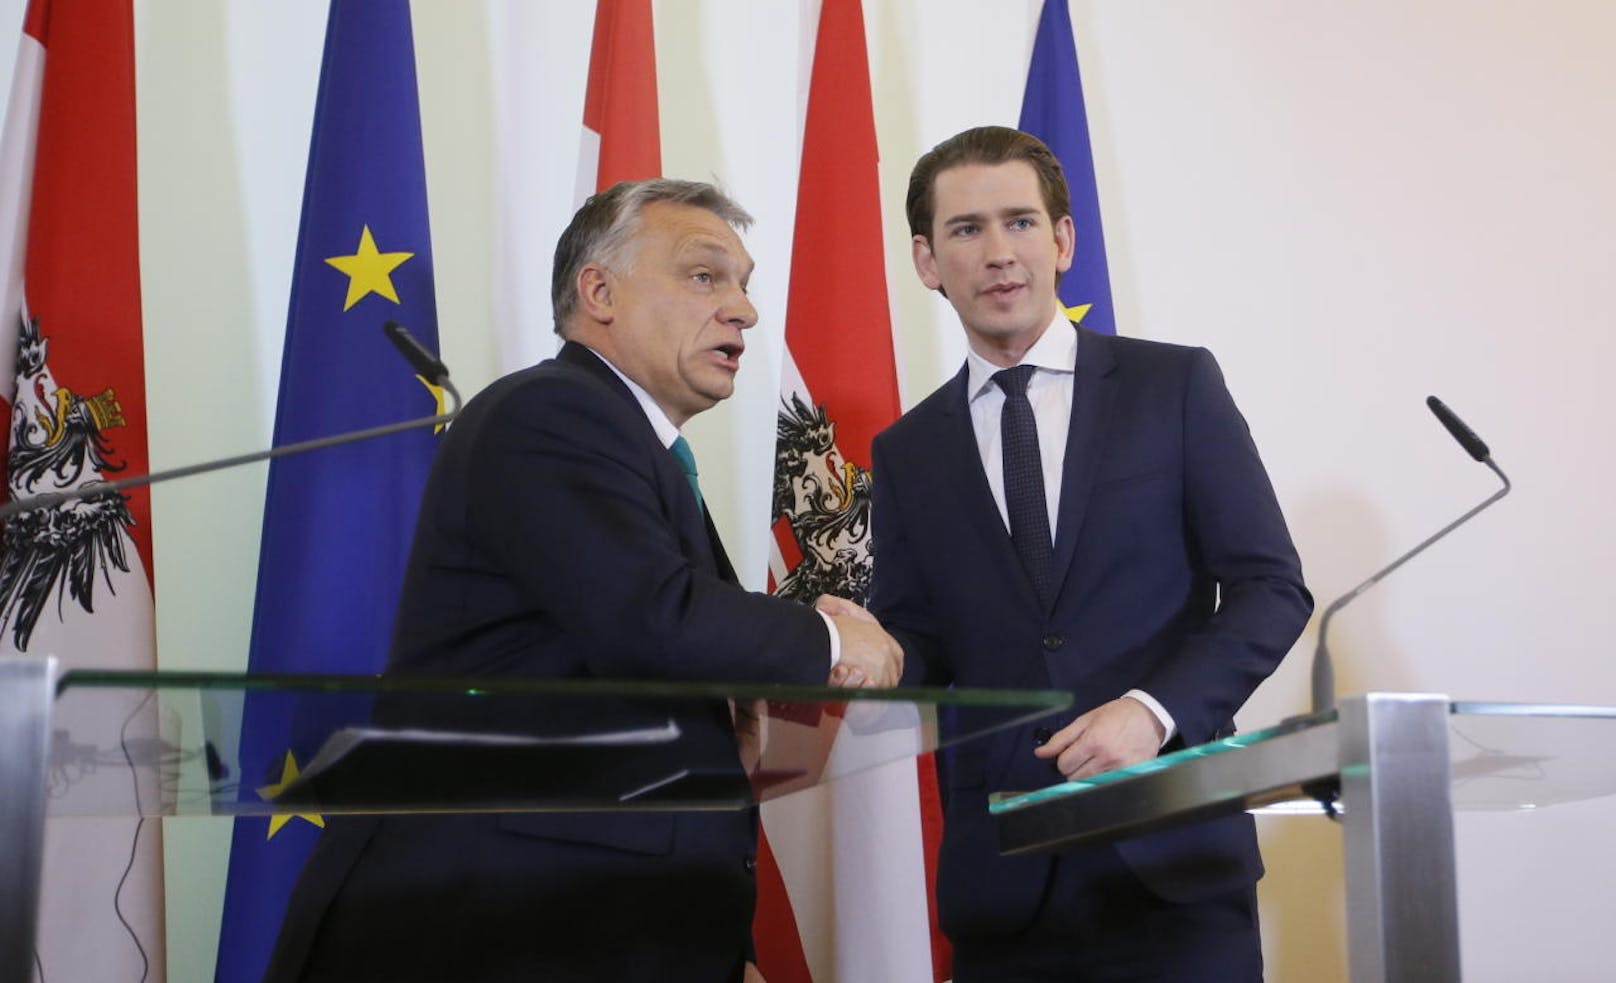 Nach einem Arbeitsgespräch traten Orban und Kurz vor die Presse. Sie betonten die guten Beziehungen und die Bedeutung des Grenzschutzes.